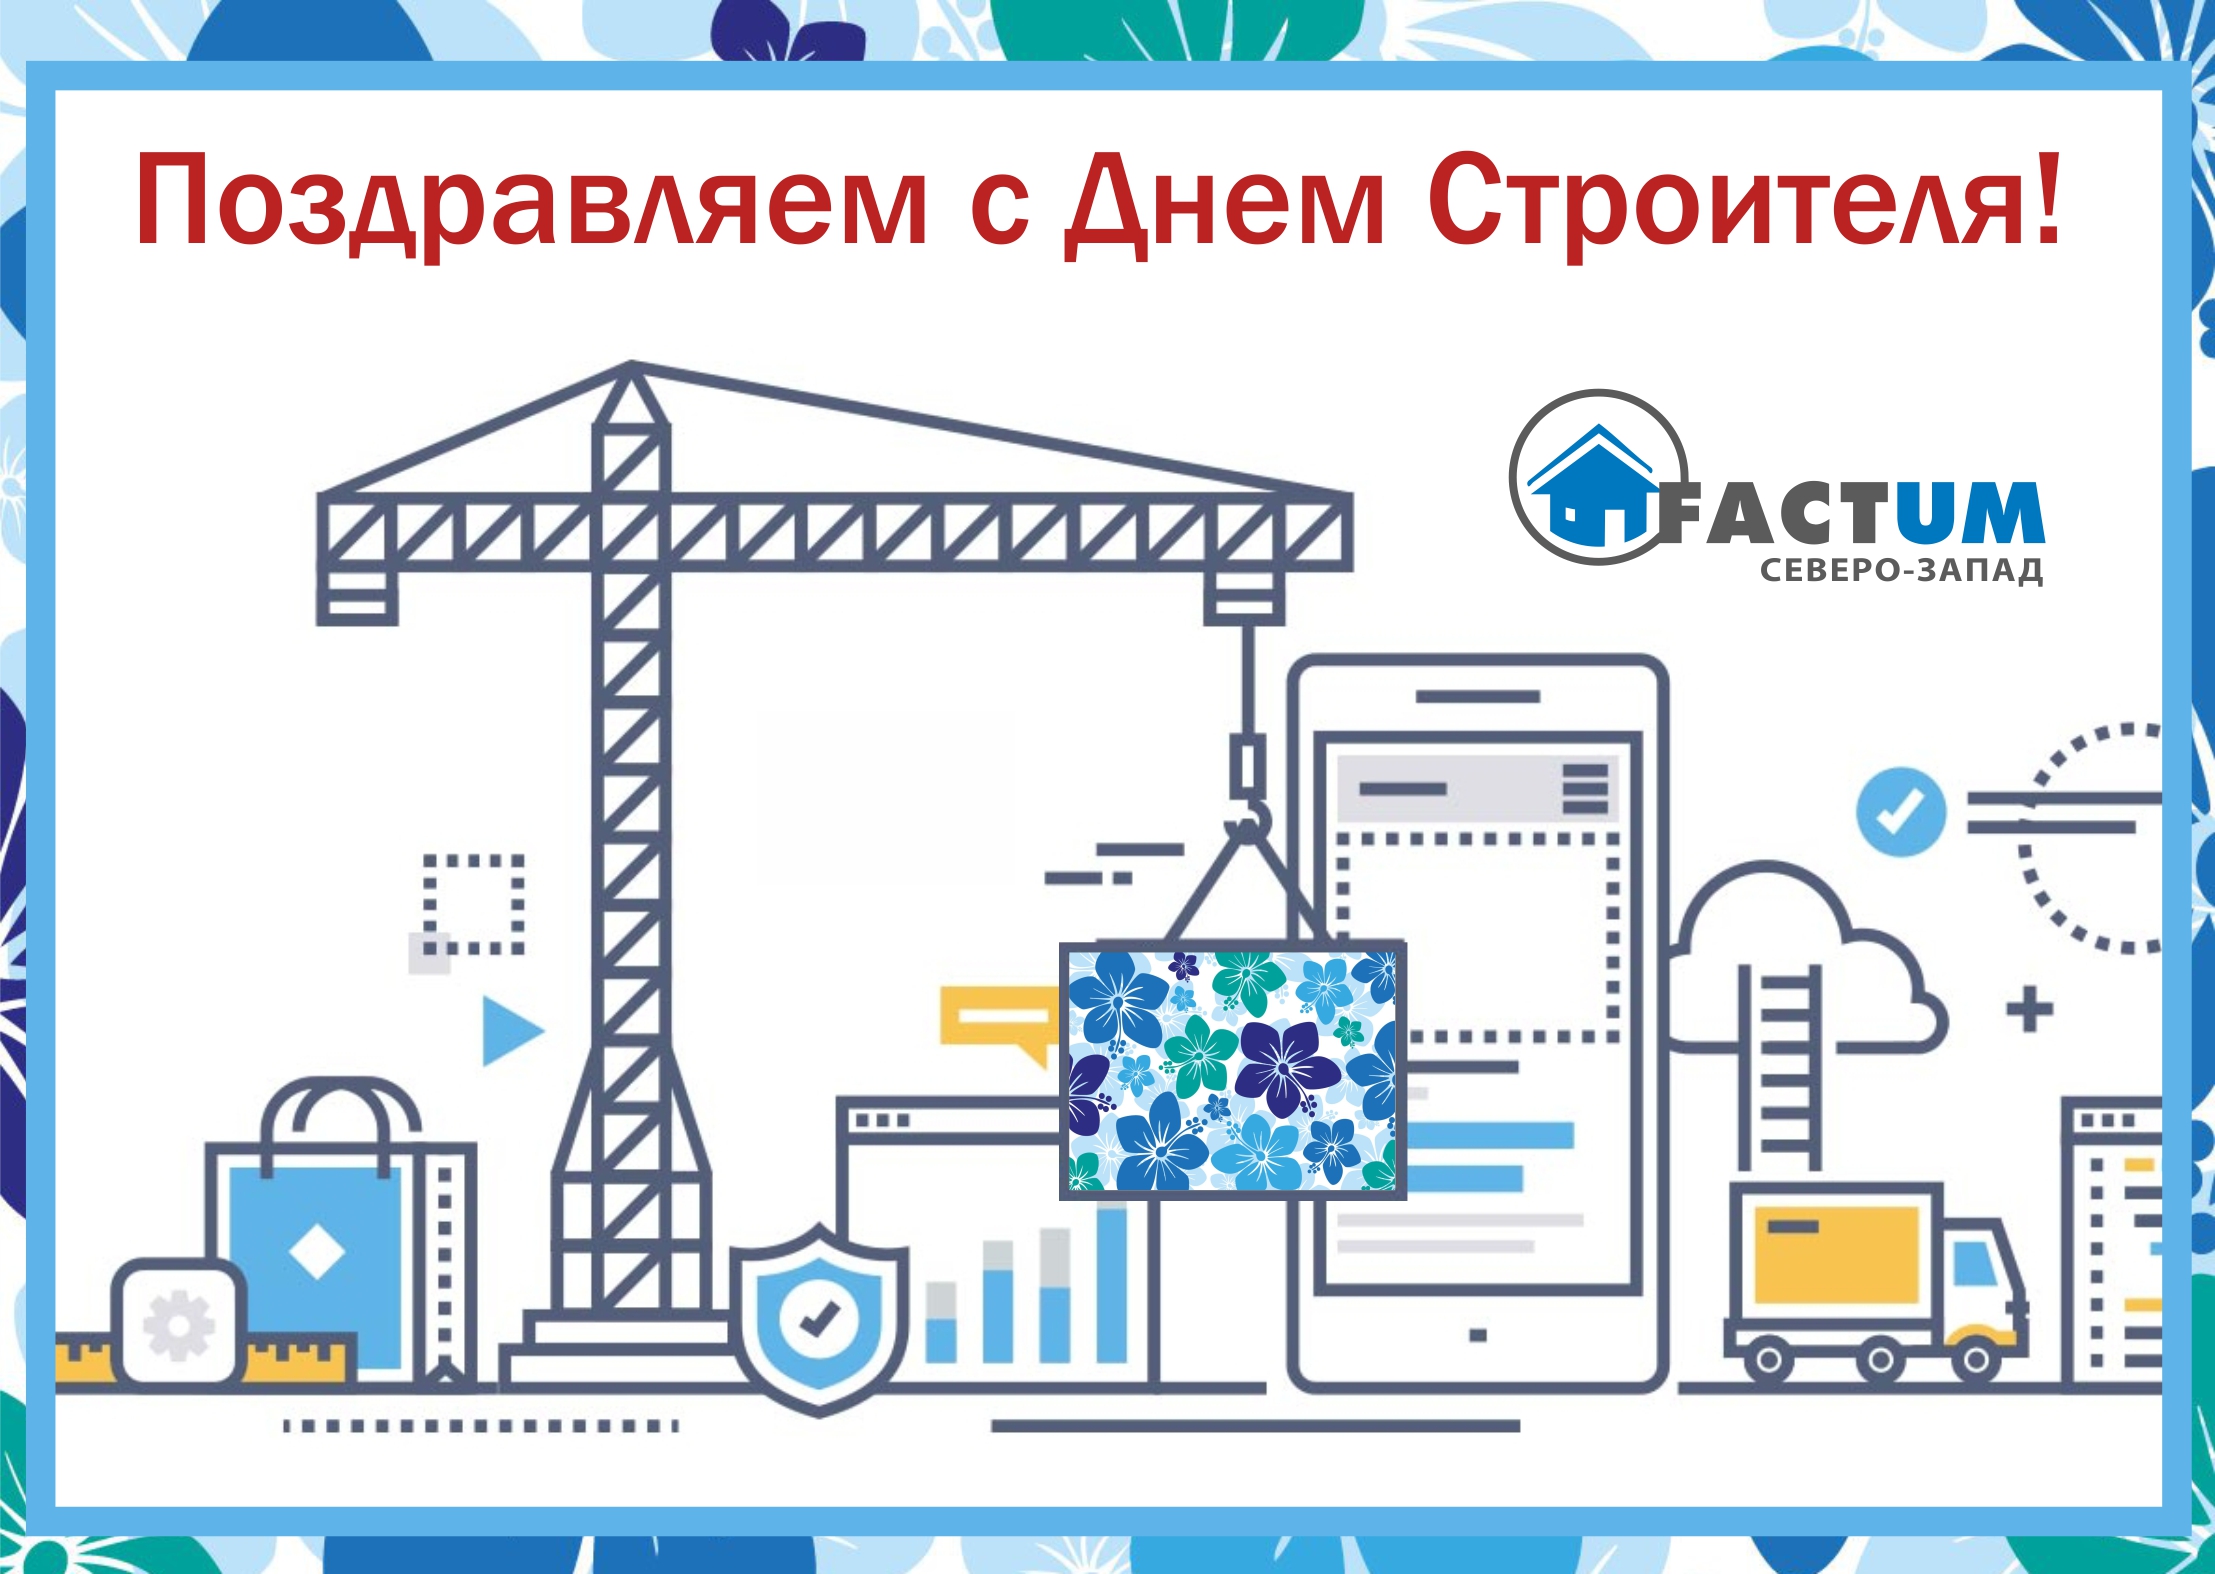 2 Компания «Фактум Северо-Запад», Санкт-Петербург | Икопал